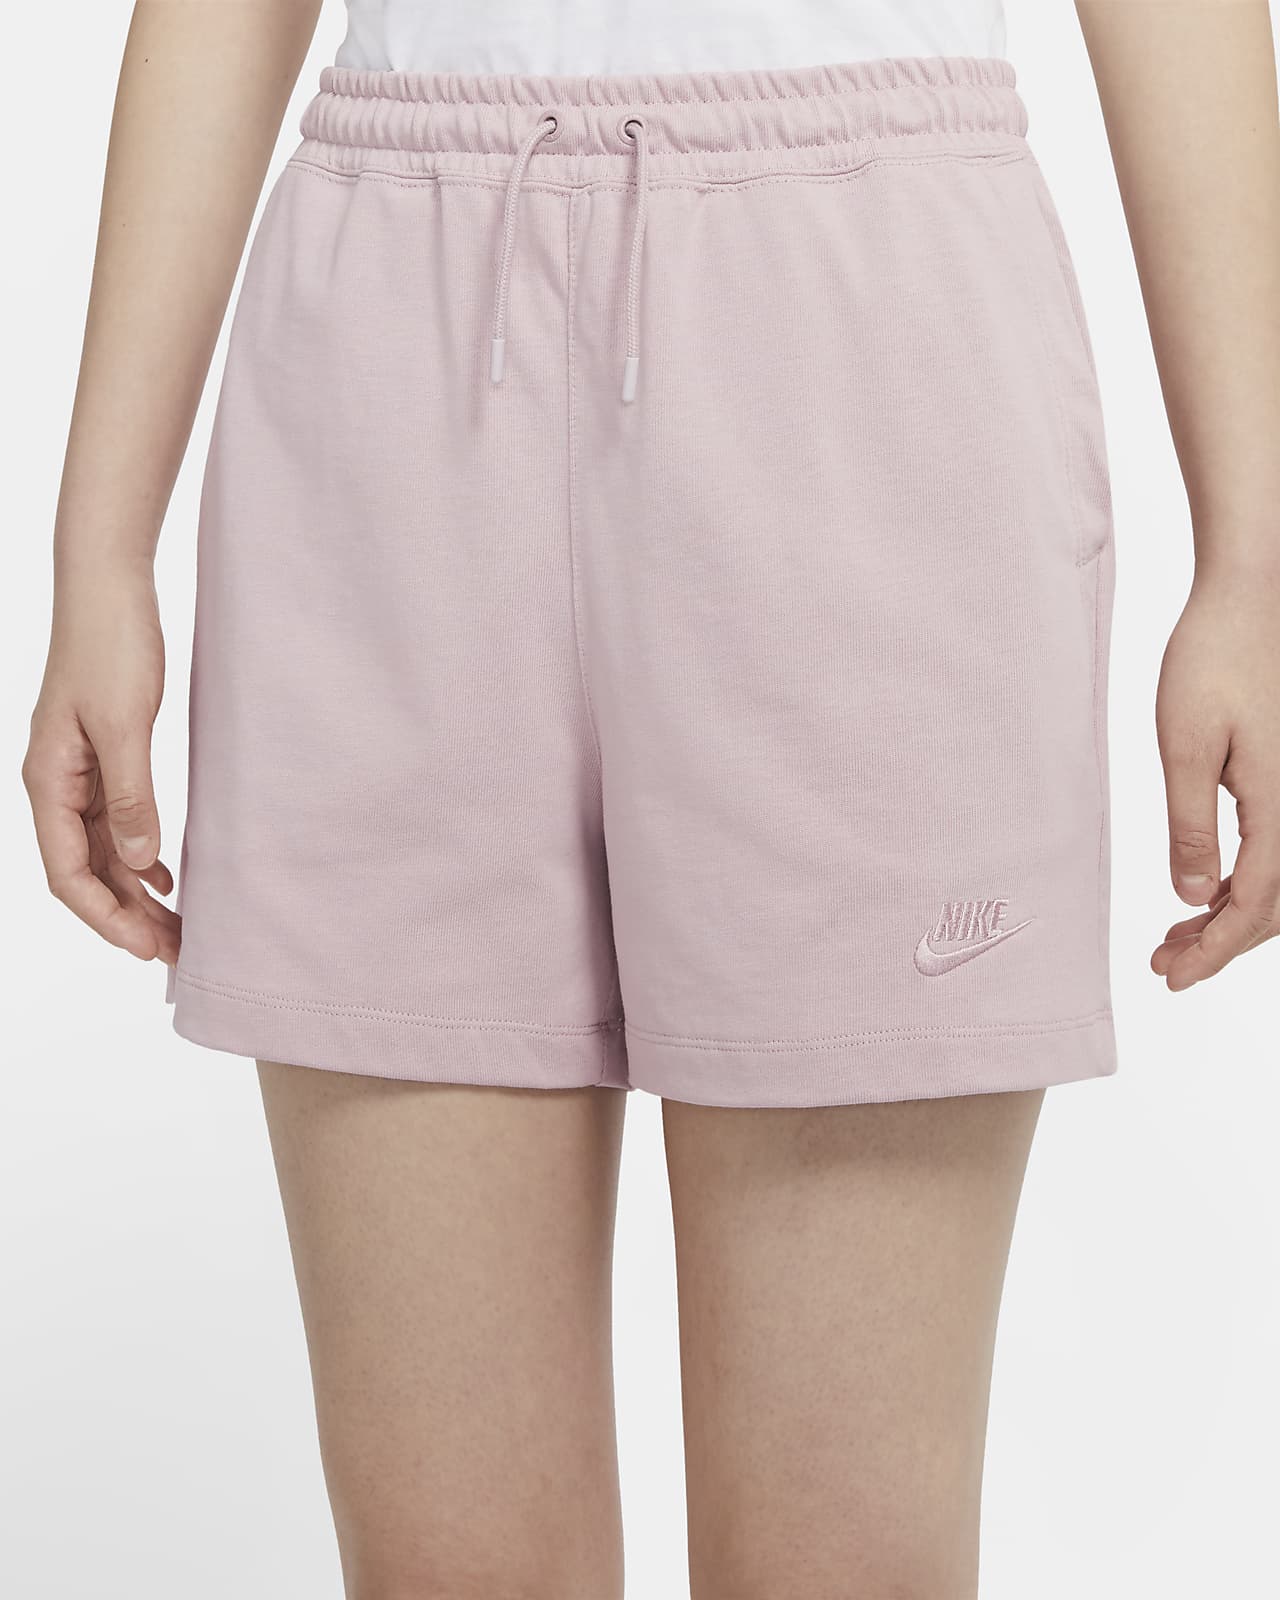 nike women's jersey shorts